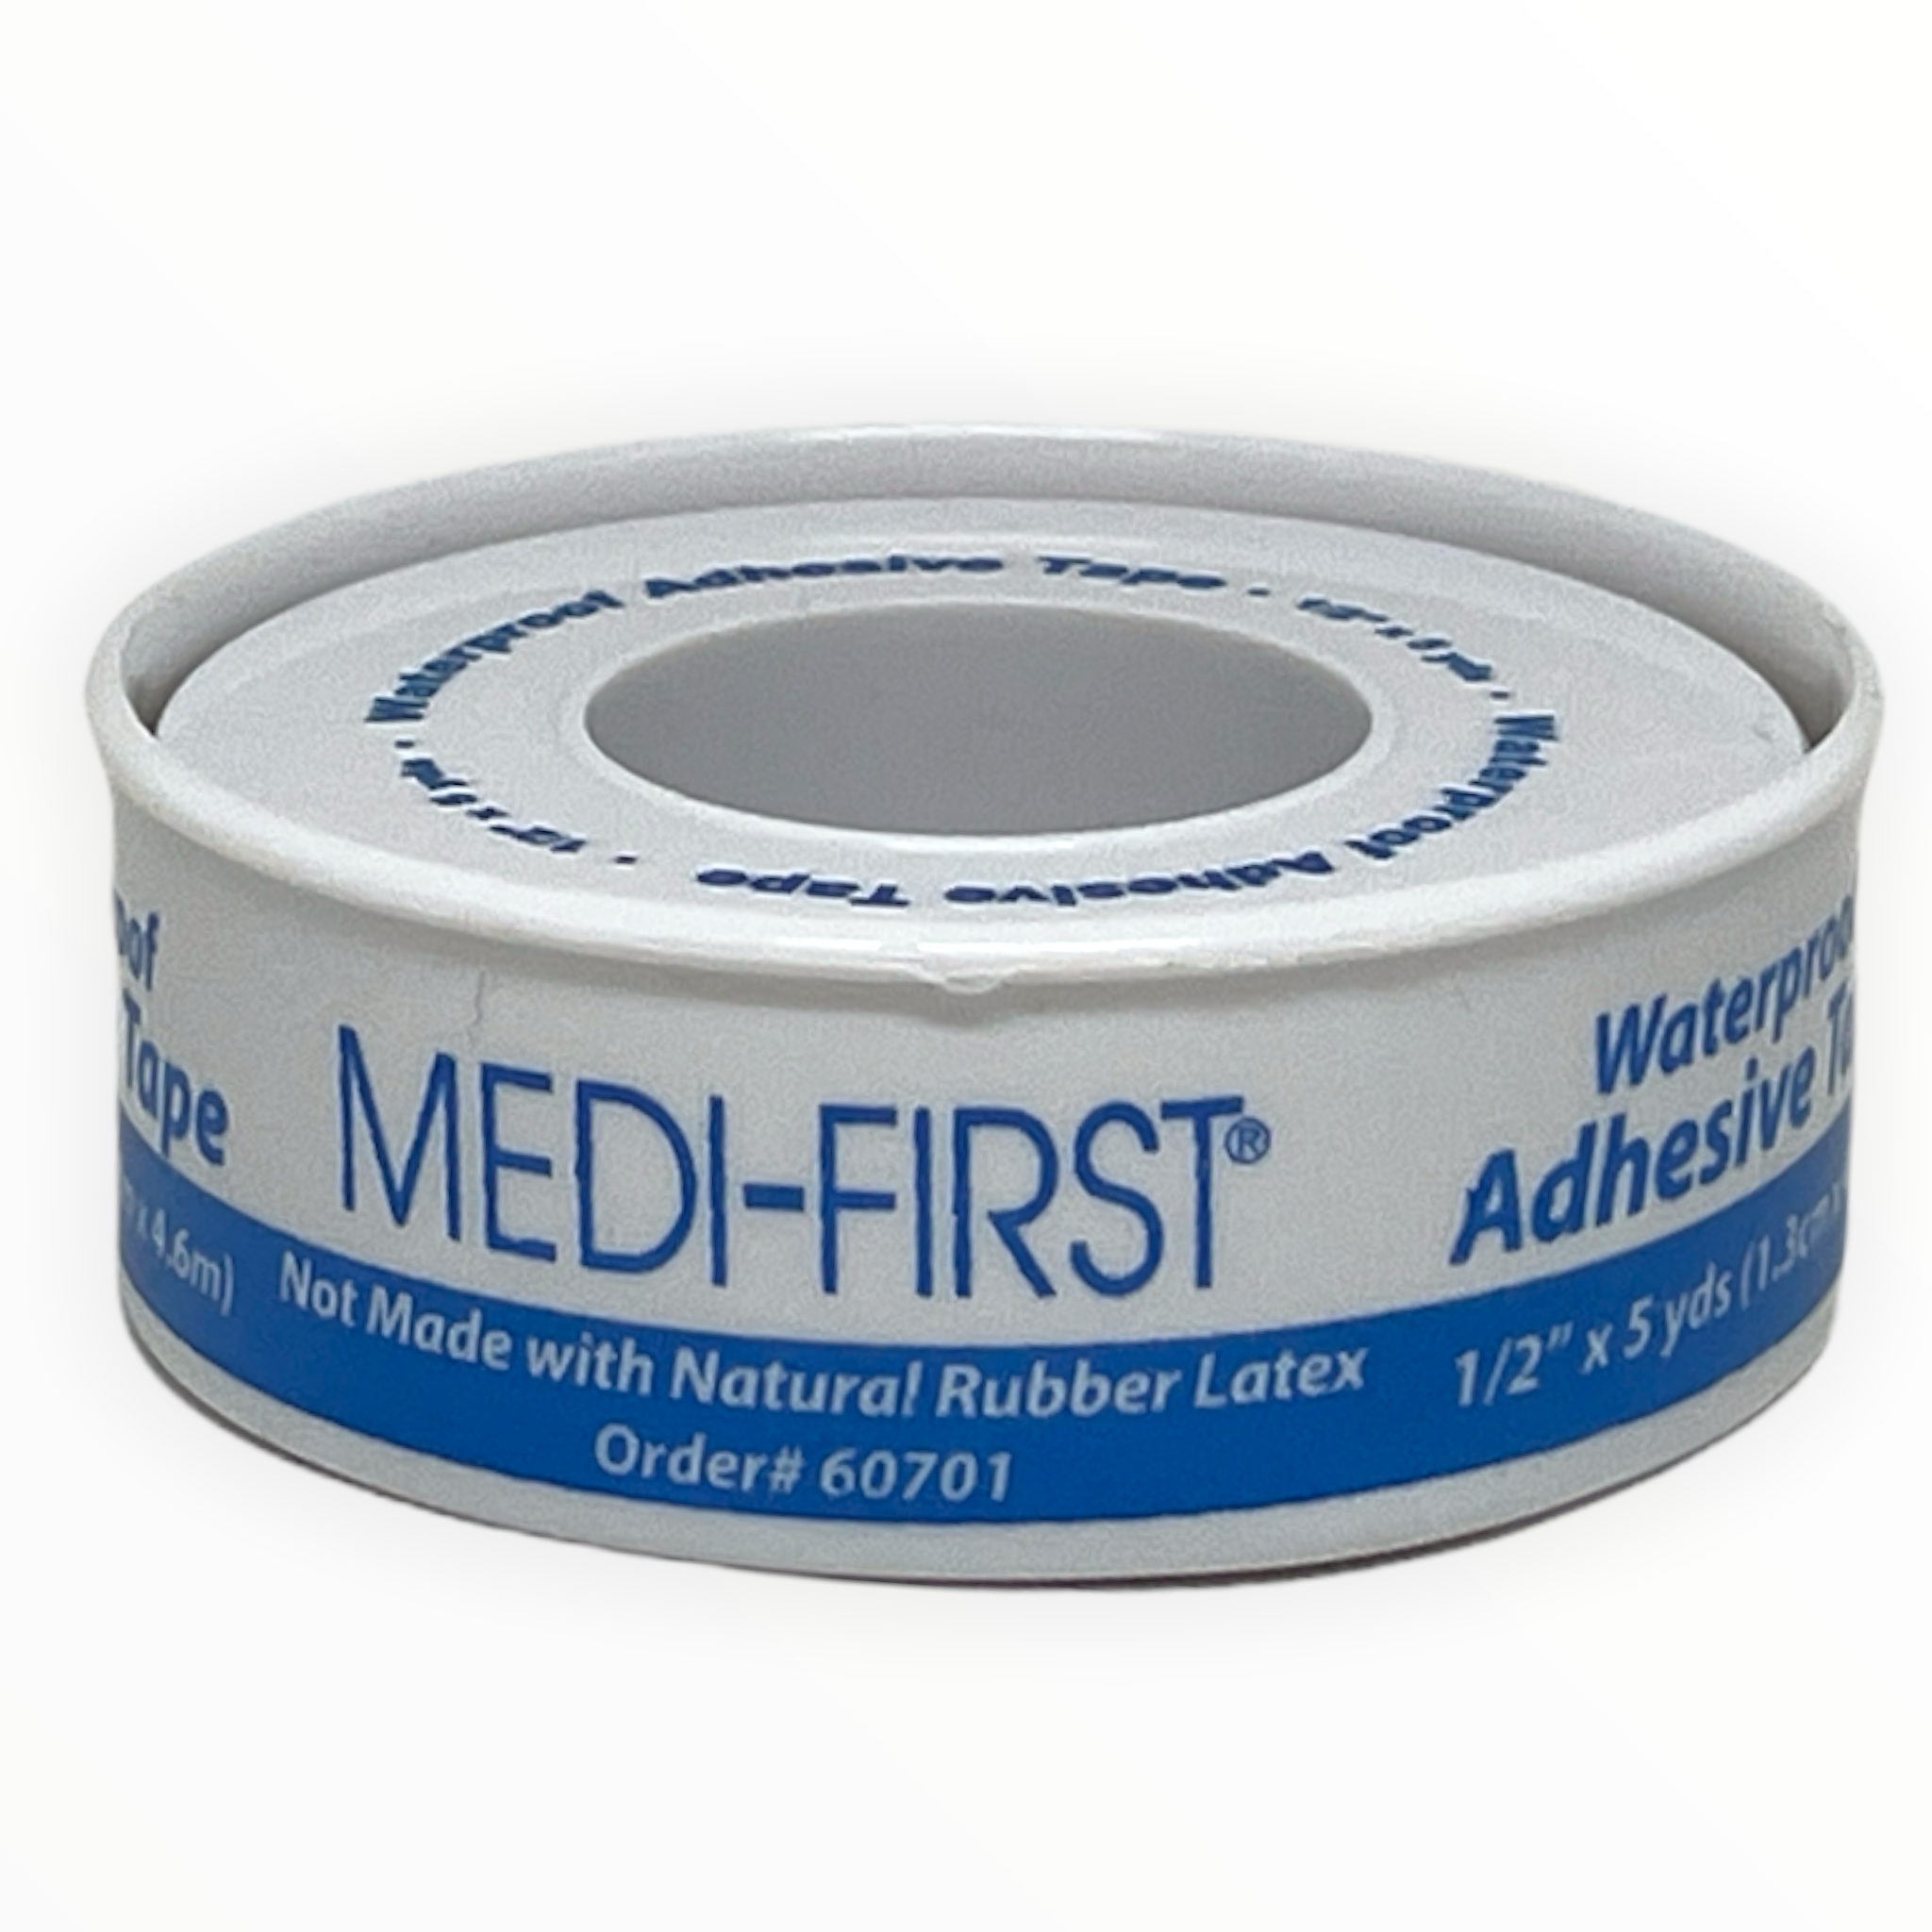 Medique | Adhesive Tape Waterproof 1/2